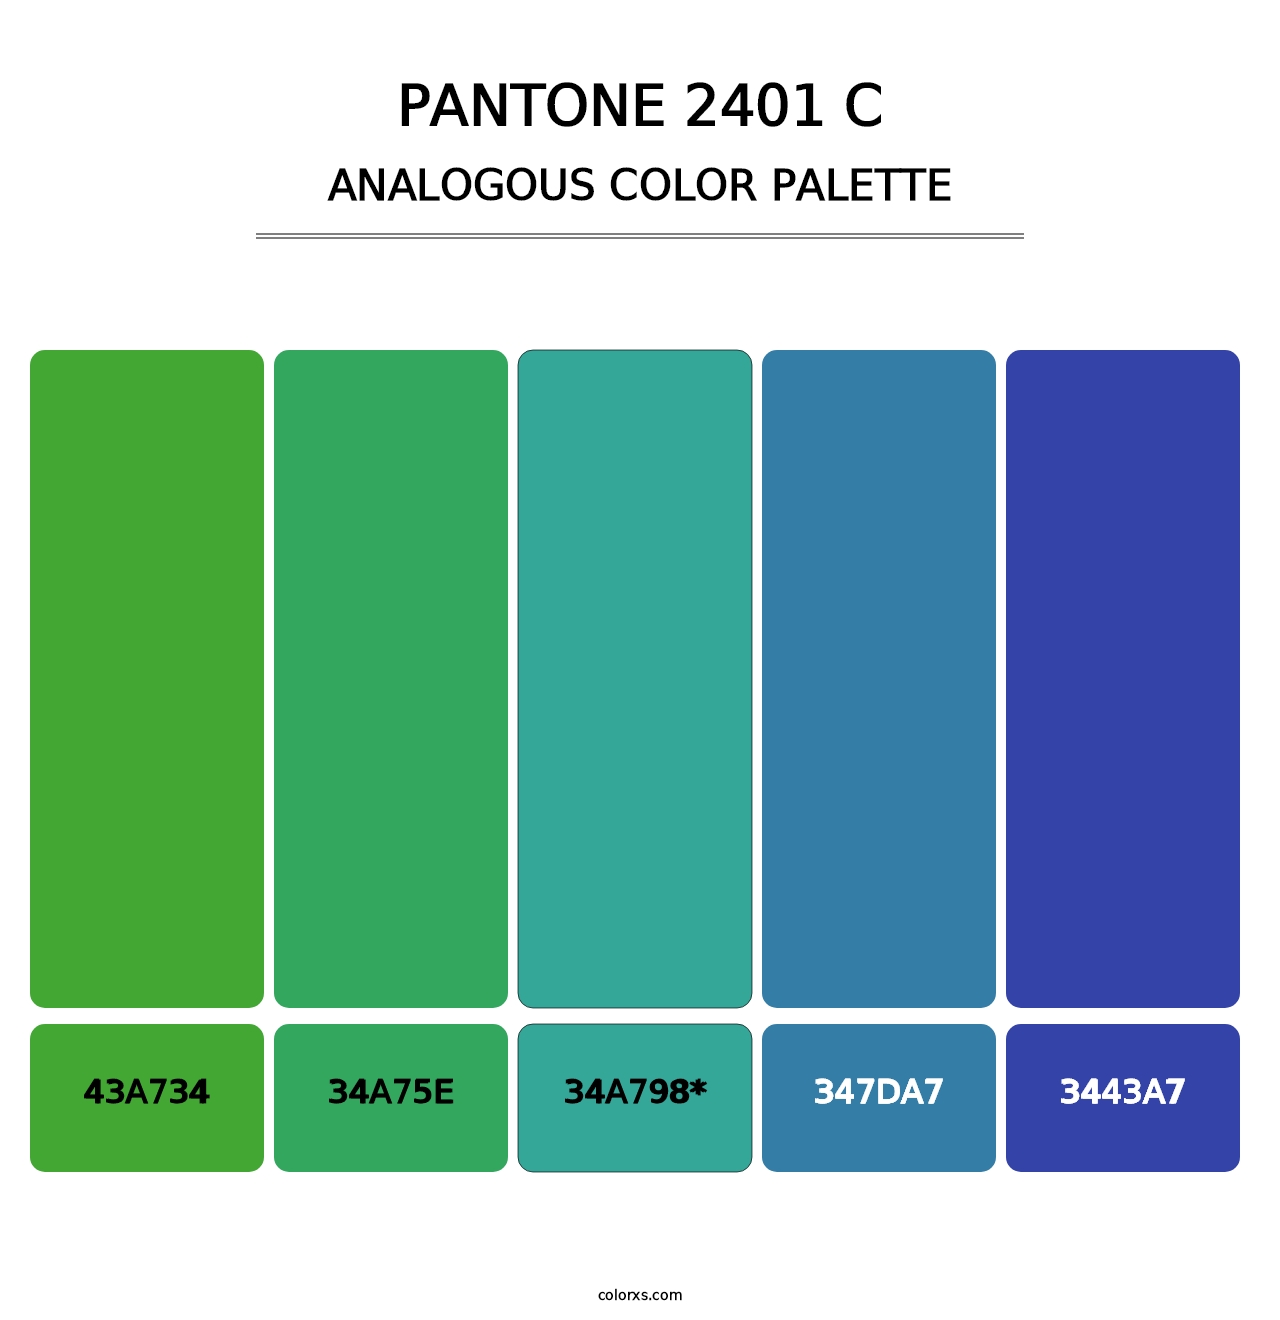 PANTONE 2401 C - Analogous Color Palette